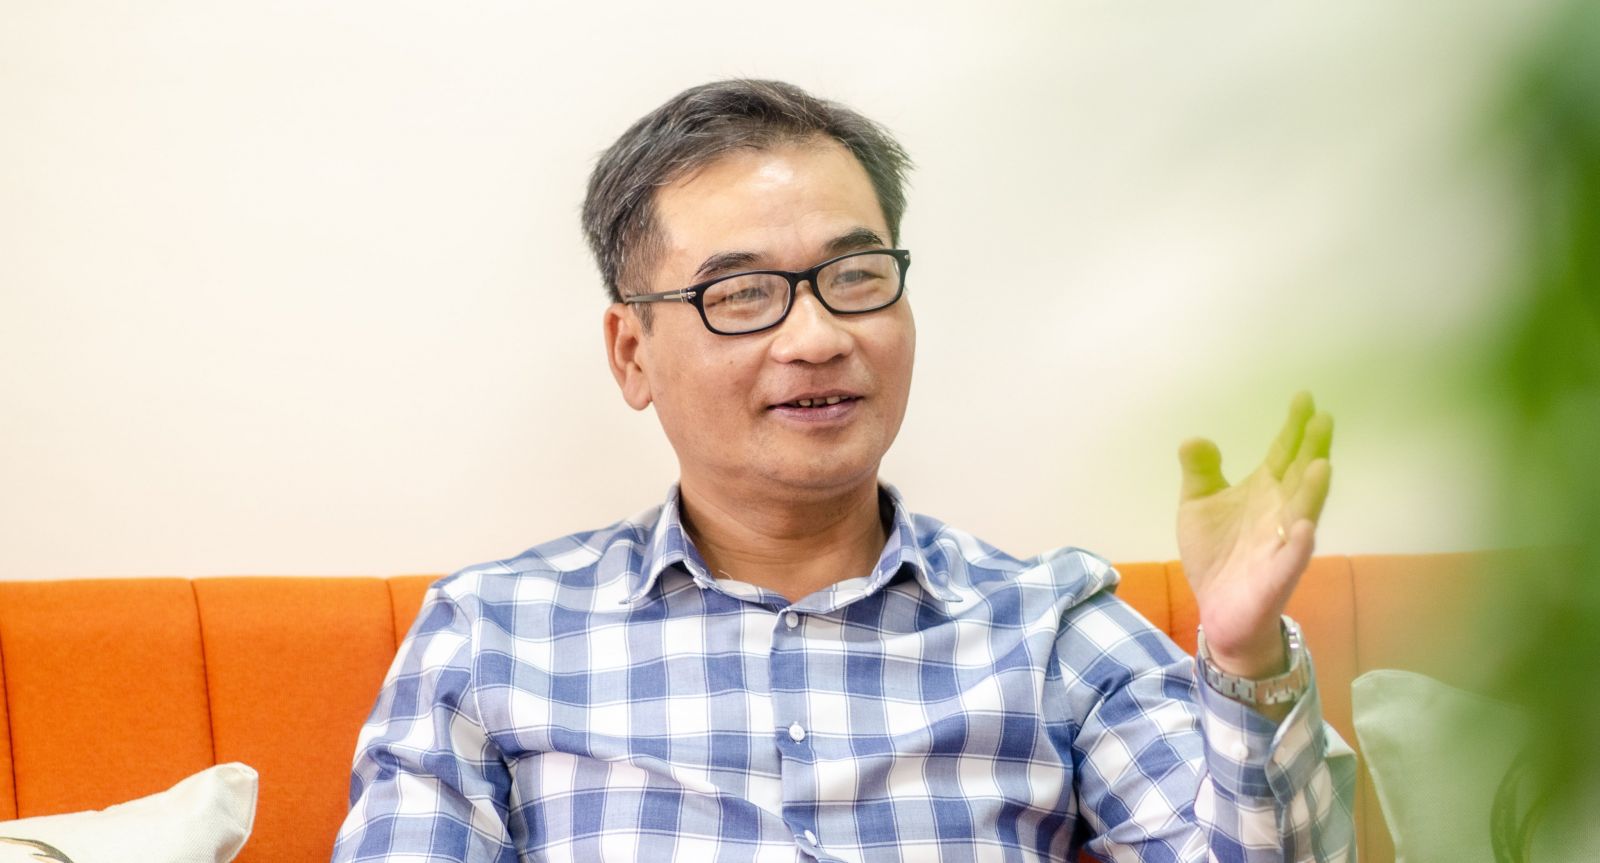  TS. Nguyễn Hoàng Nam, Trưởng khoa Tài chính - Ngân hàng, Đại học Đại Nam, kiêm Giám đốc chiến lược Công ty cổ phần Lendbiz. Ảnh: NVCC